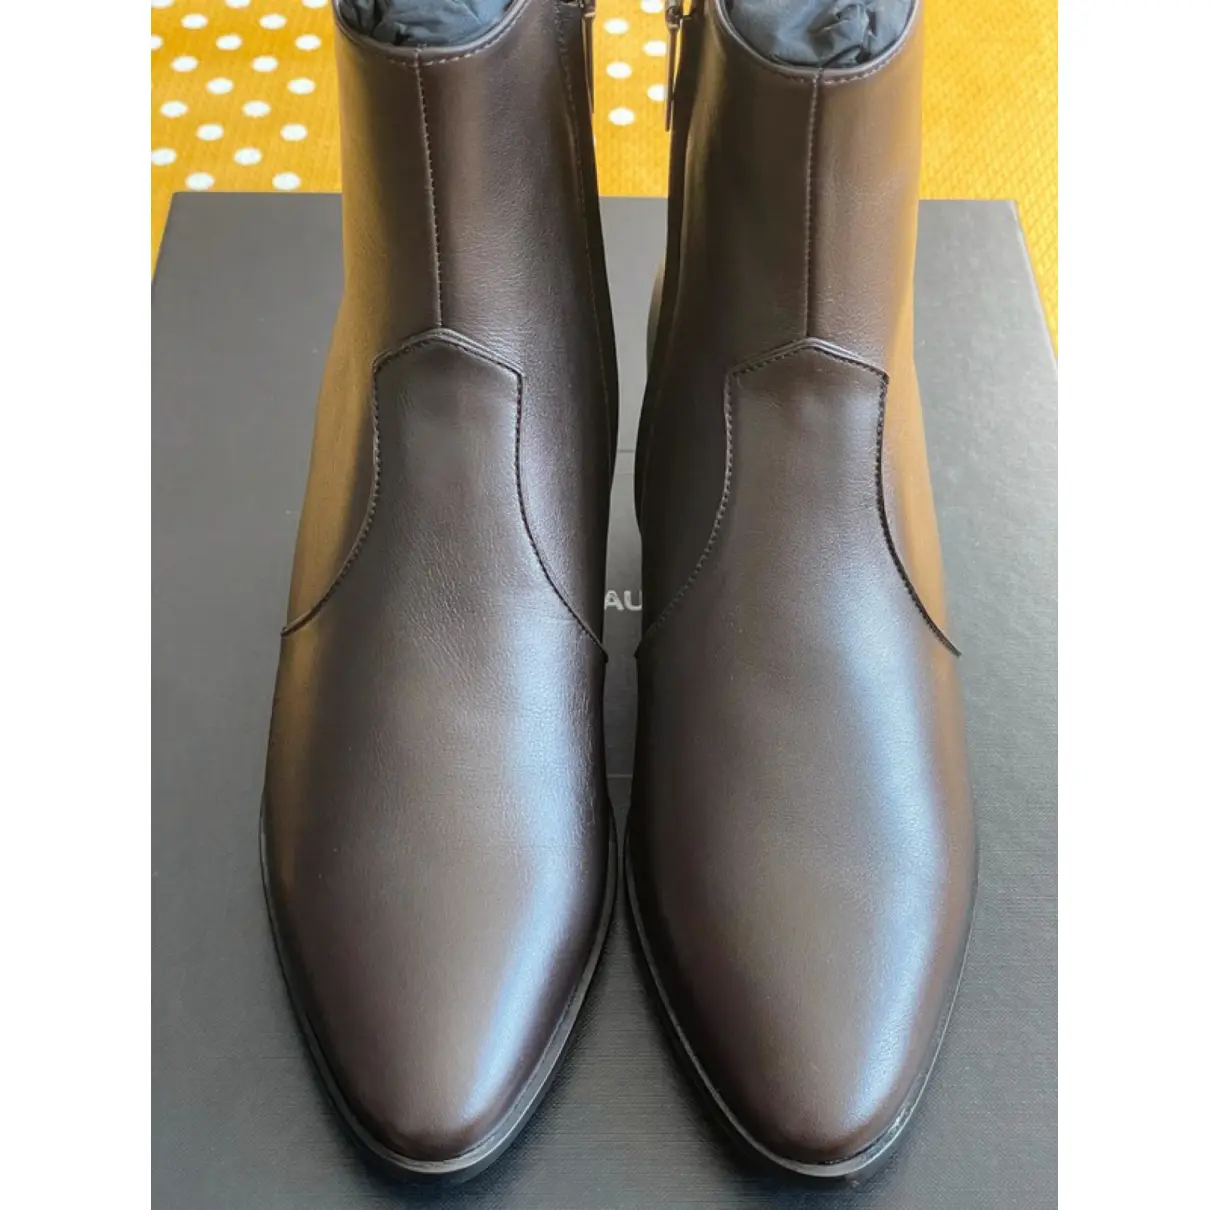 West Chelsea leather western boots Saint Laurent